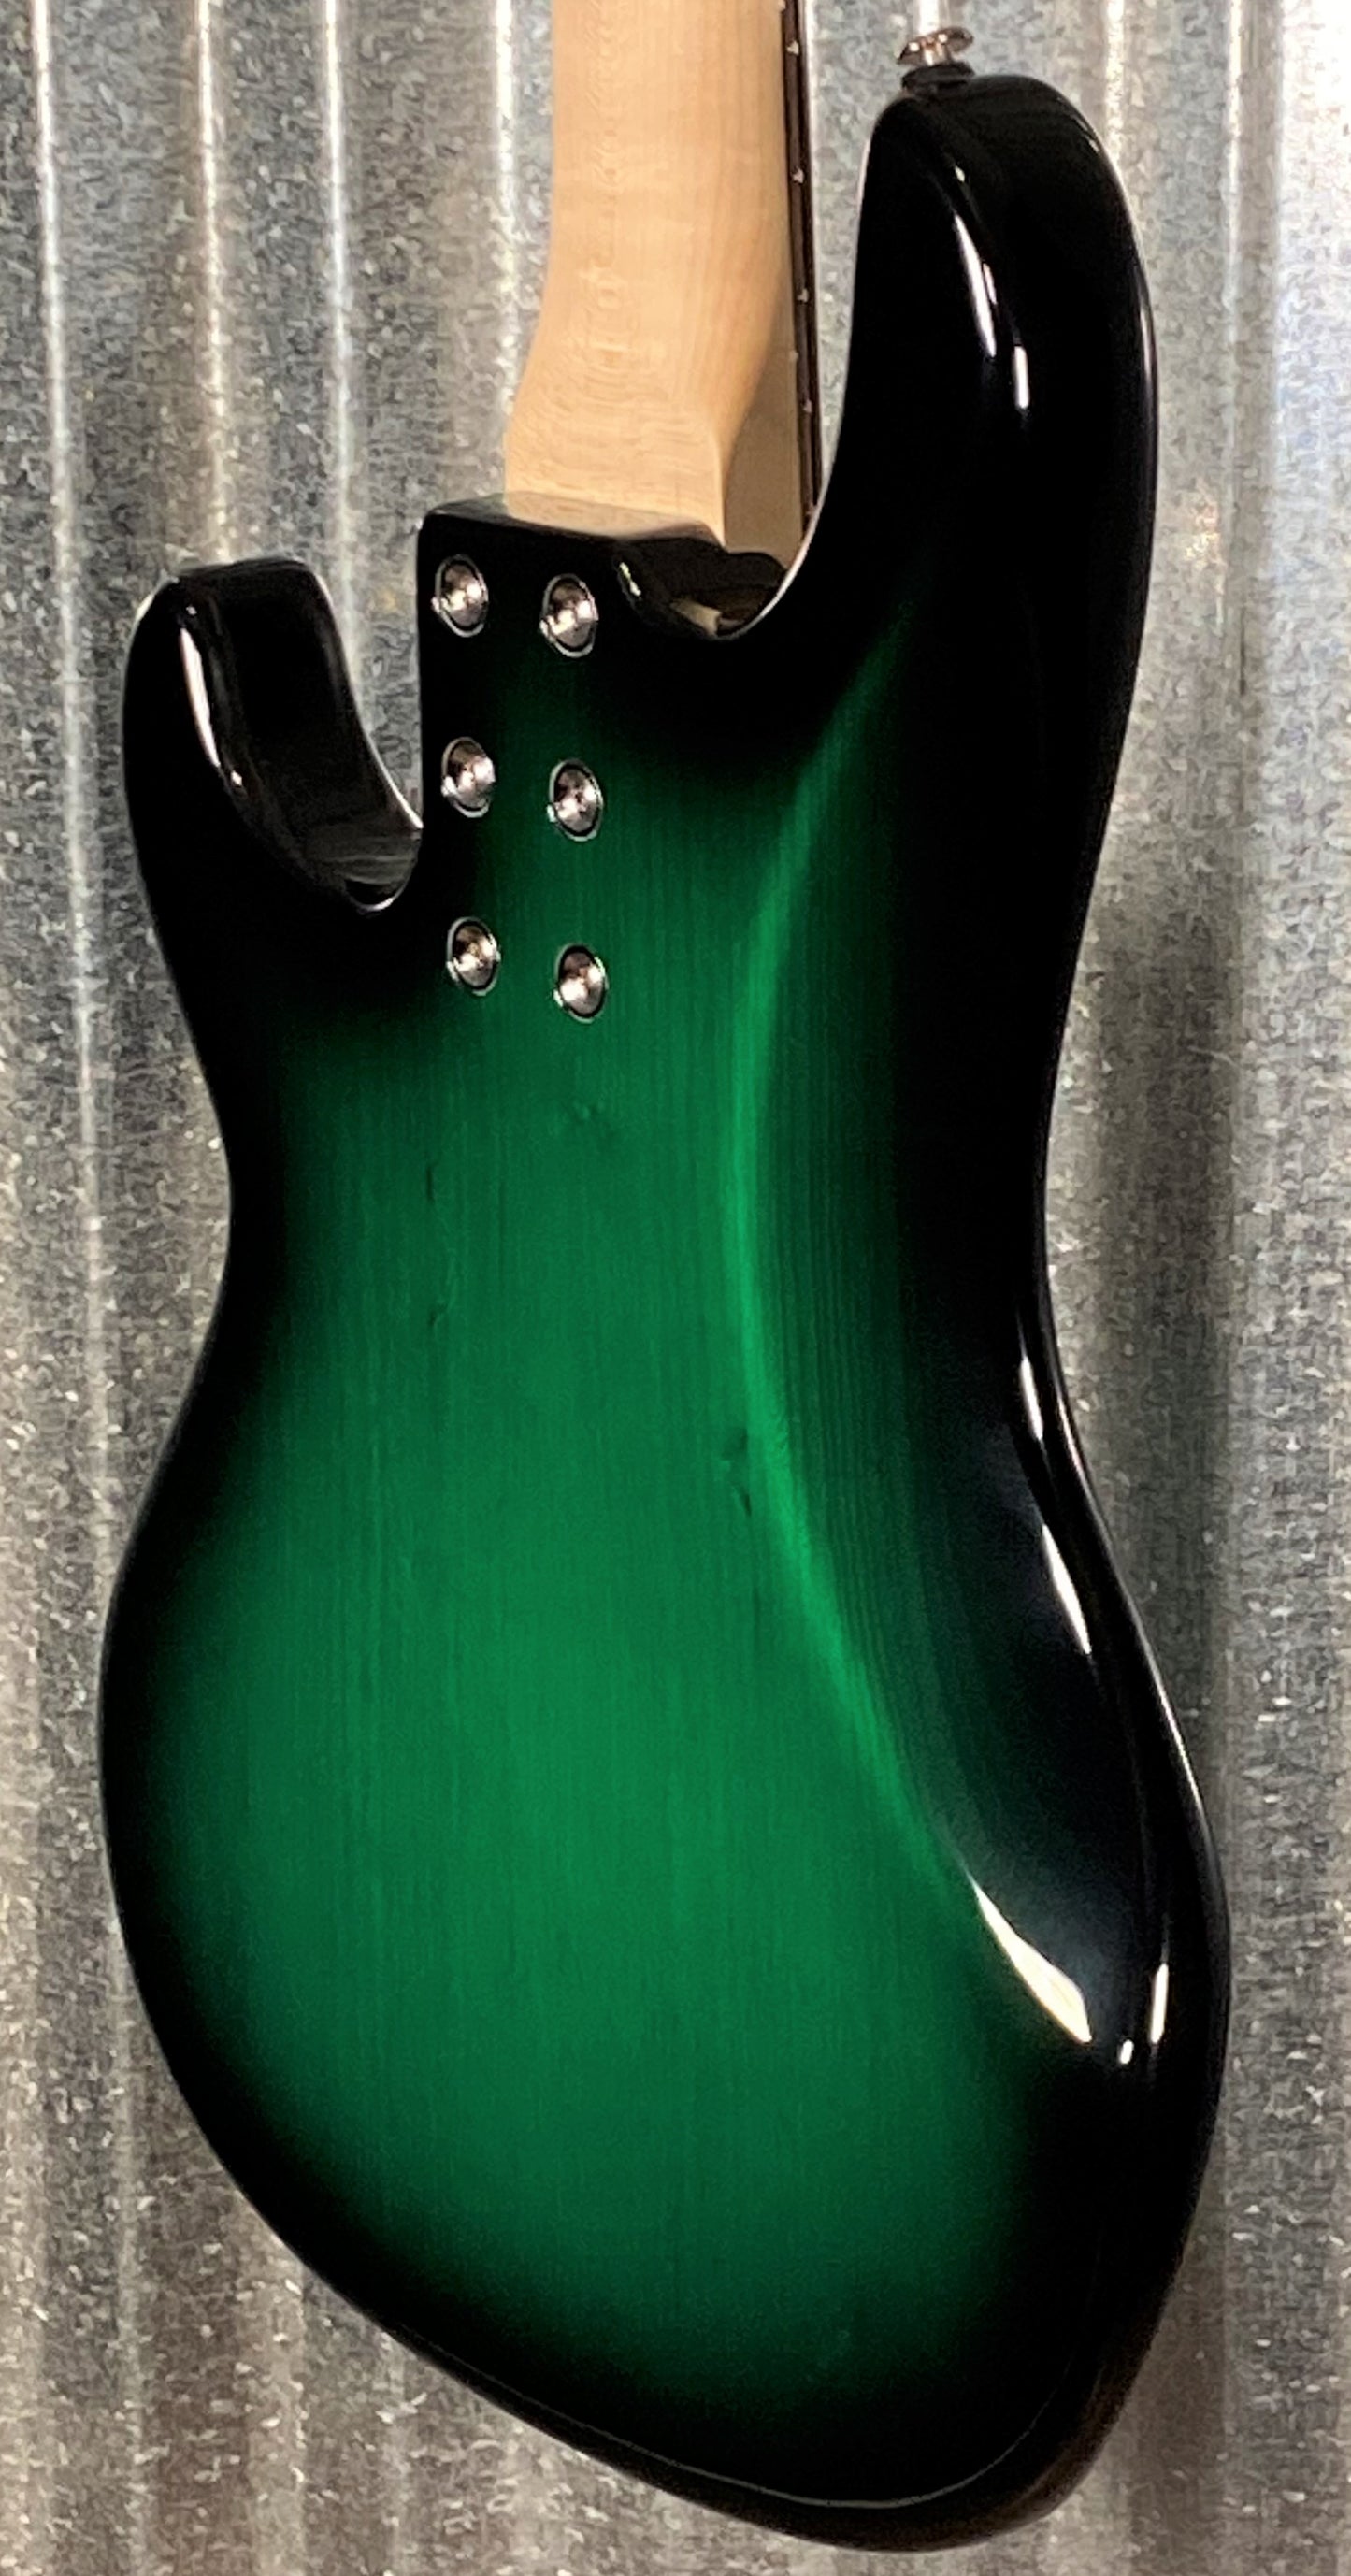 G&L USA Kiloton 5 String Bass Greenburst & Case #5154